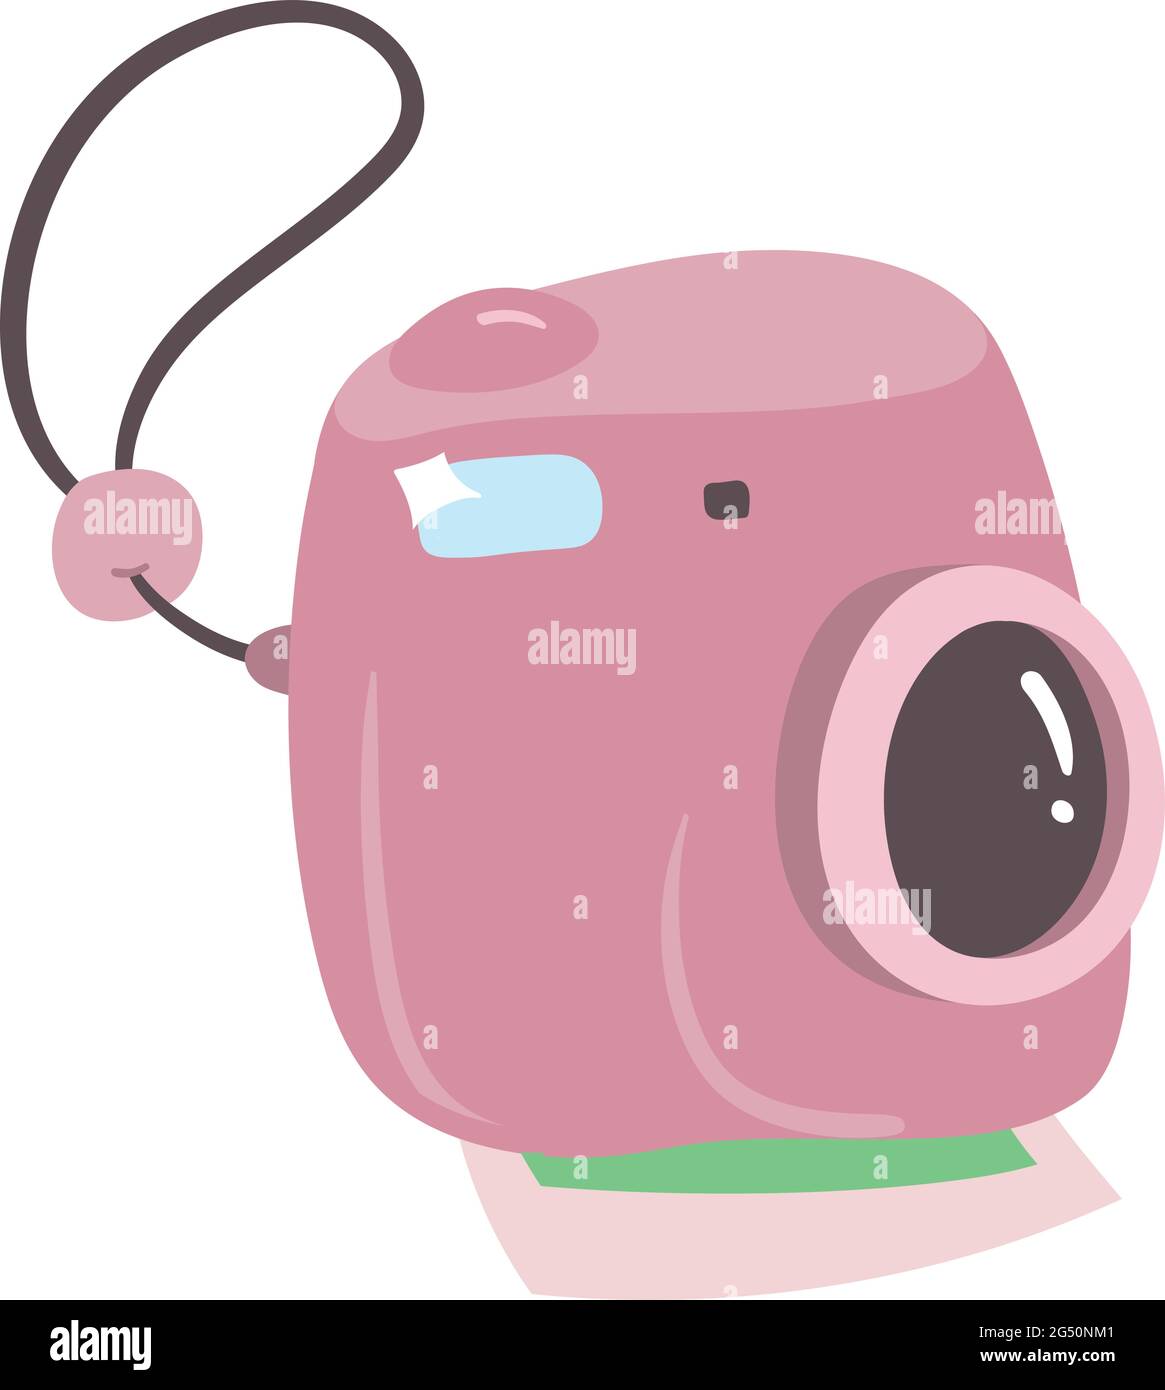 Bonita cámara Polaroid en color rosa con impresión instantánea de imágenes desde la parte inferior. Accesorios de viaje para mochileros. Arte vectorial para viajes esenciales. Ilustración del Vector